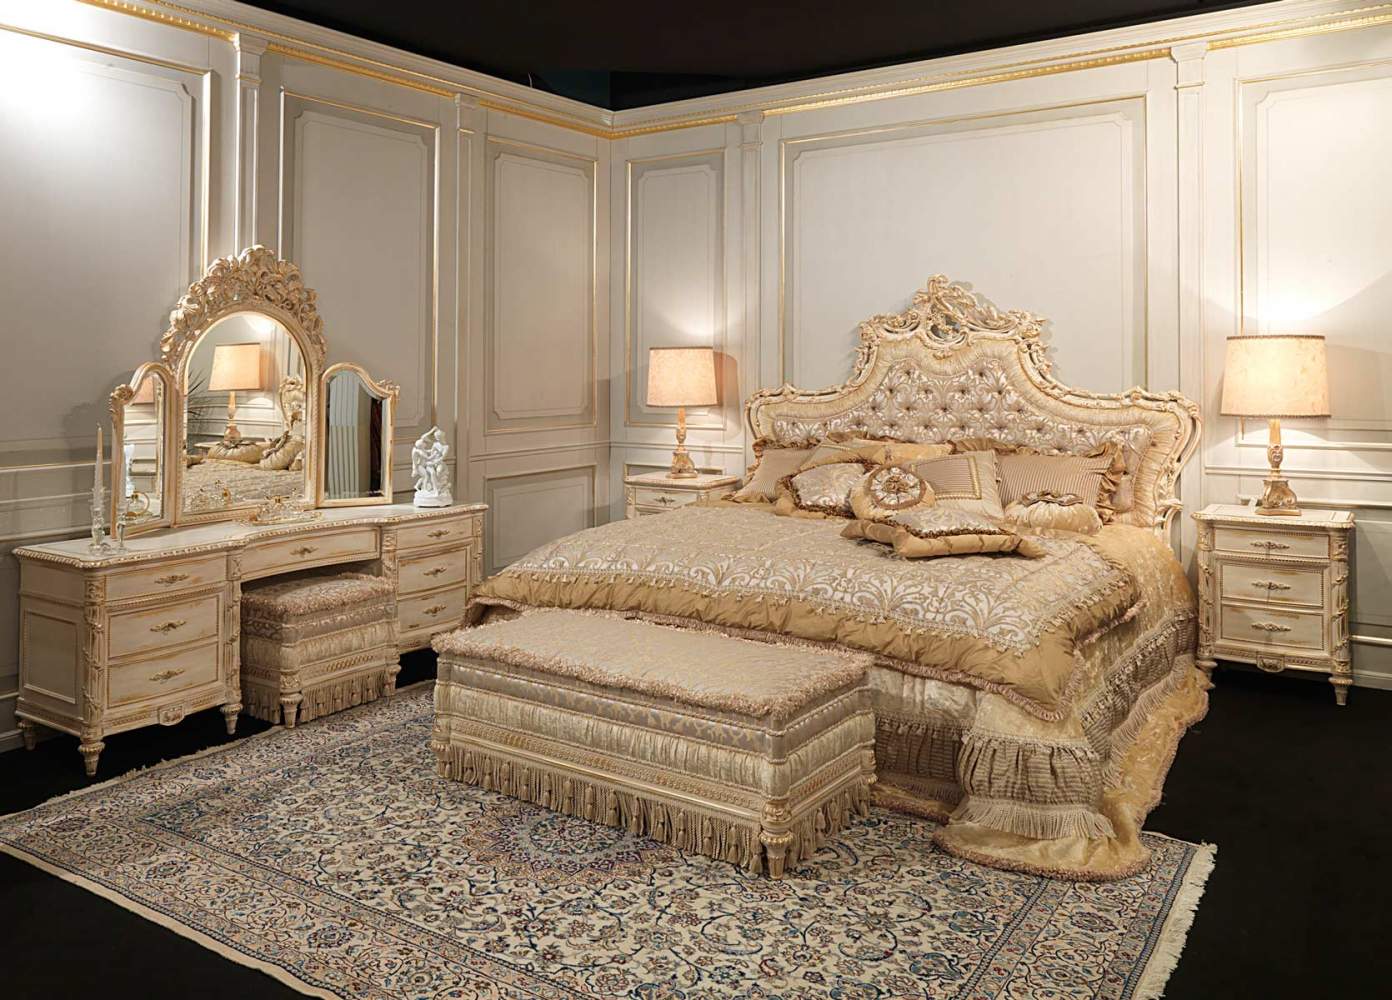 Camera da letto classica in stile Luigi XVI, testata capitonnè con ricchi intagli, comodini e toilette con specchiera, panche imbottite coordinate